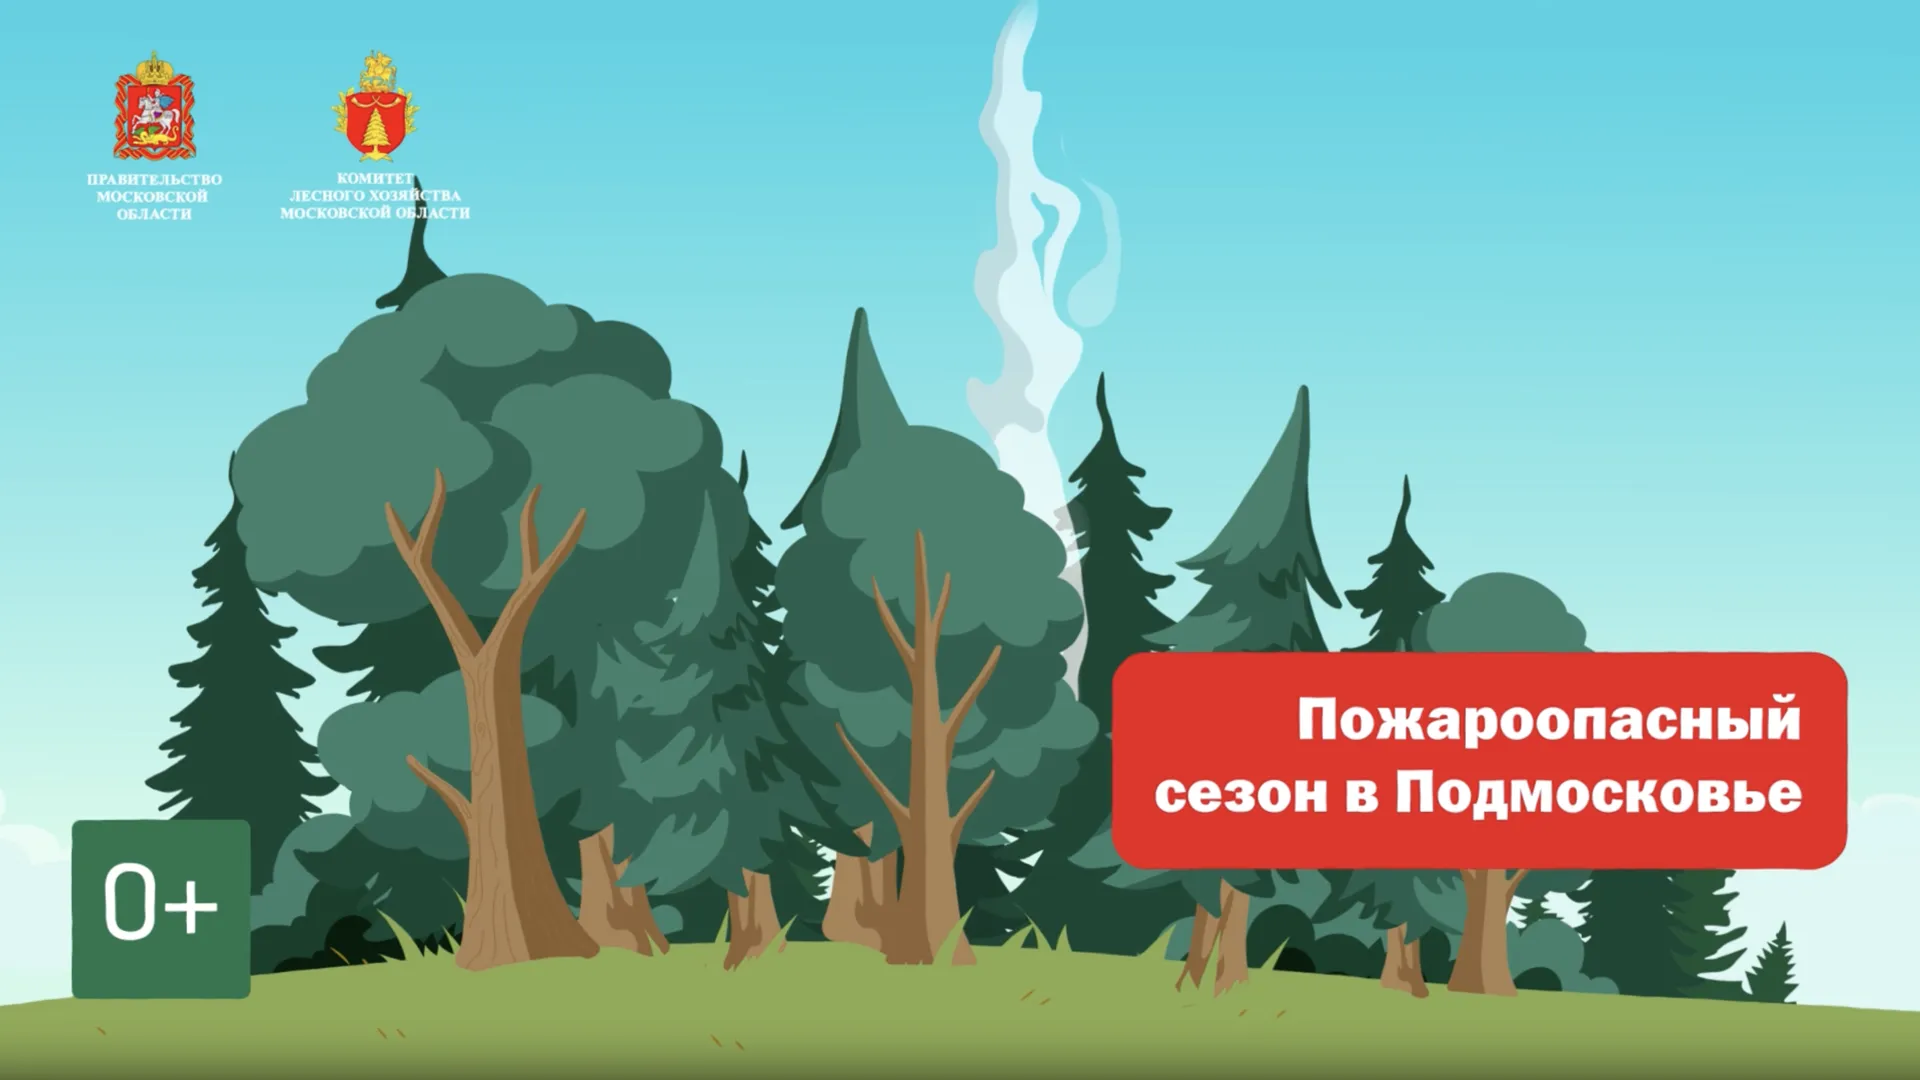 Жителям Подмосковья рассказали о штрафах за разведение костров в лесах